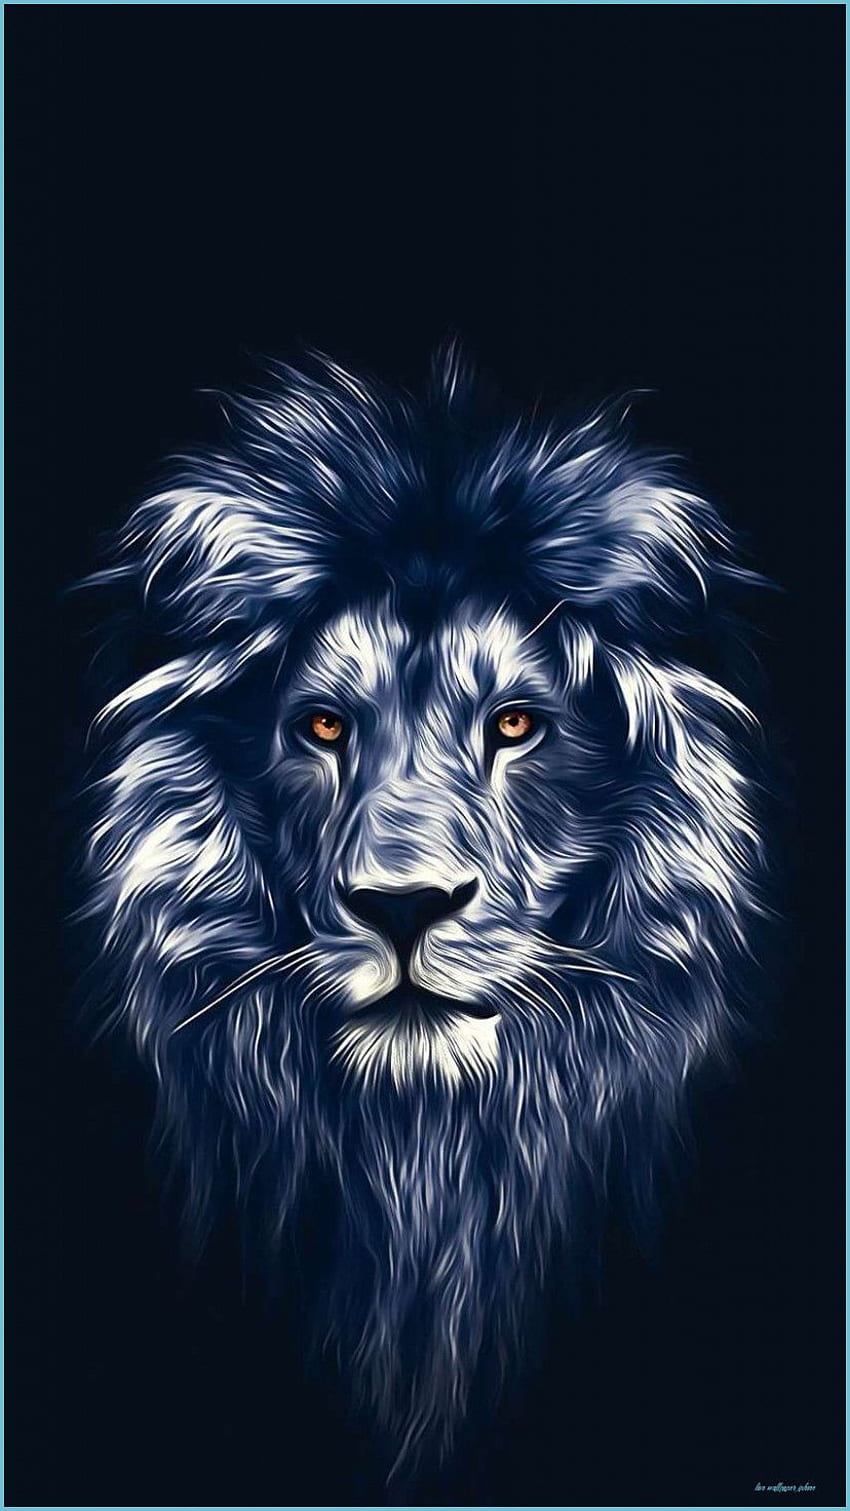 Hình nền Sư tử cho iPhone - Sư tử được biết đến là linh vật của sức mạnh và kiên định. Vì vậy, hình nền sư tử sẽ là lựa chọn hoàn hảo cho những người yêu thích tính cách mạnh mẽ và quyết đoán. Hình ảnh sư tử trên màn hình iPhone của bạn sẽ giúp bạn trở nên đáng tin cậy và táo bạo hơn.